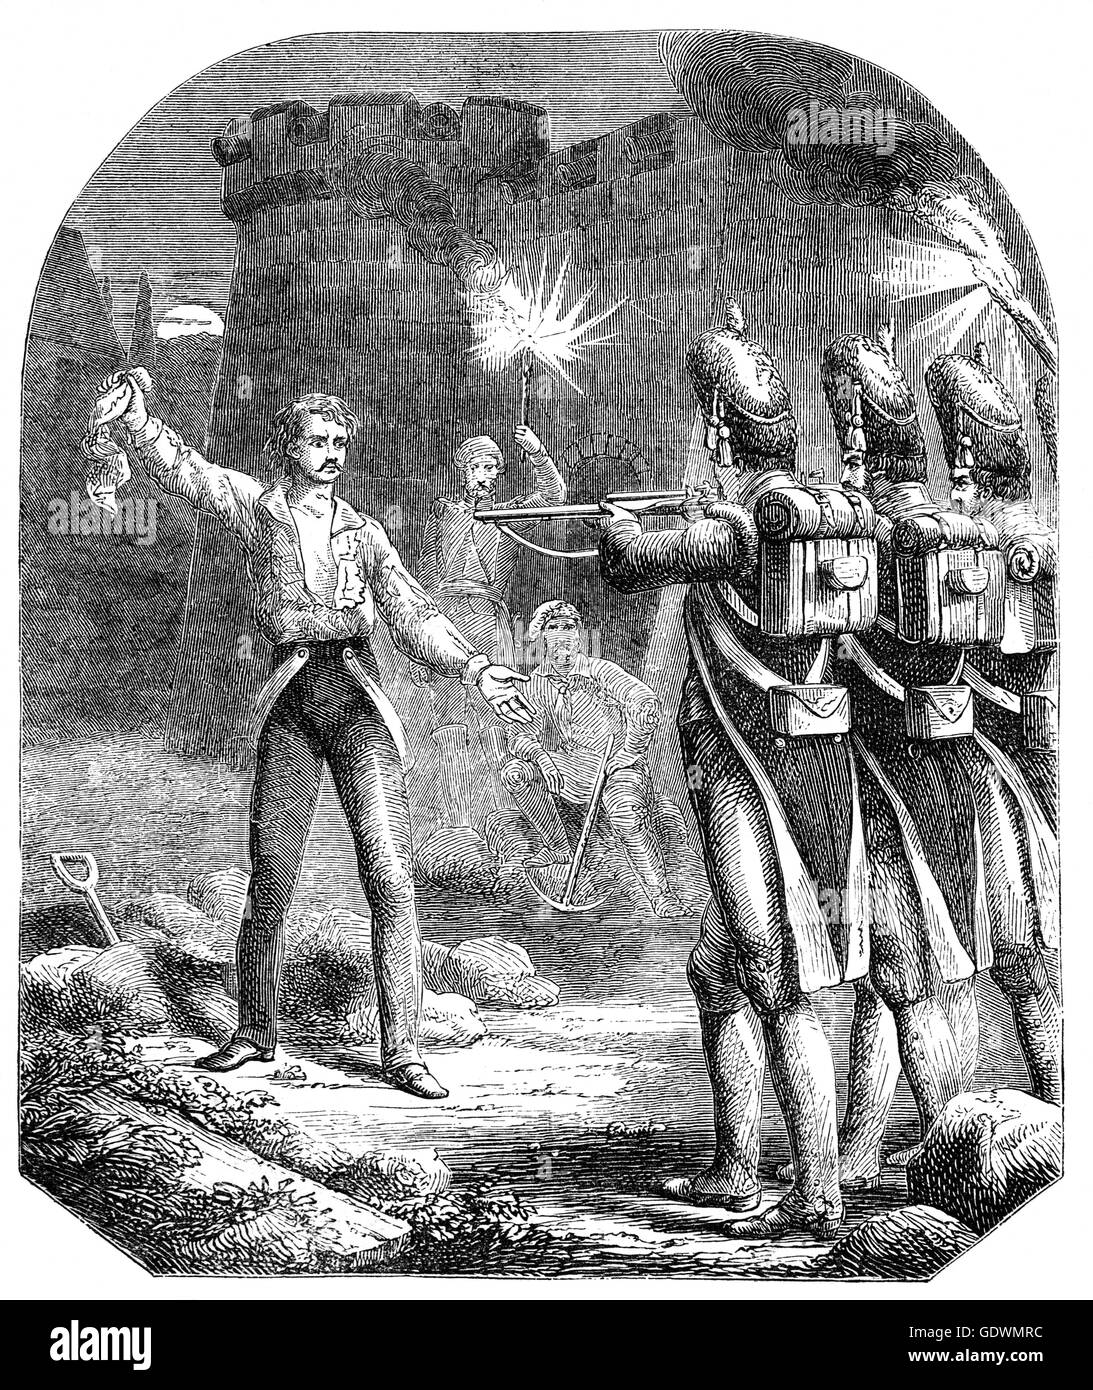 L'exécution de Louis Antoine de Bourbon, duc d'Enghien ((1772 - 1804), un membre de la famille de Bourbon des rois de France, il a été exécuté sur des accusations d'avoir aidé la Grande-Bretagne et complote contre la France. Banque D'Images